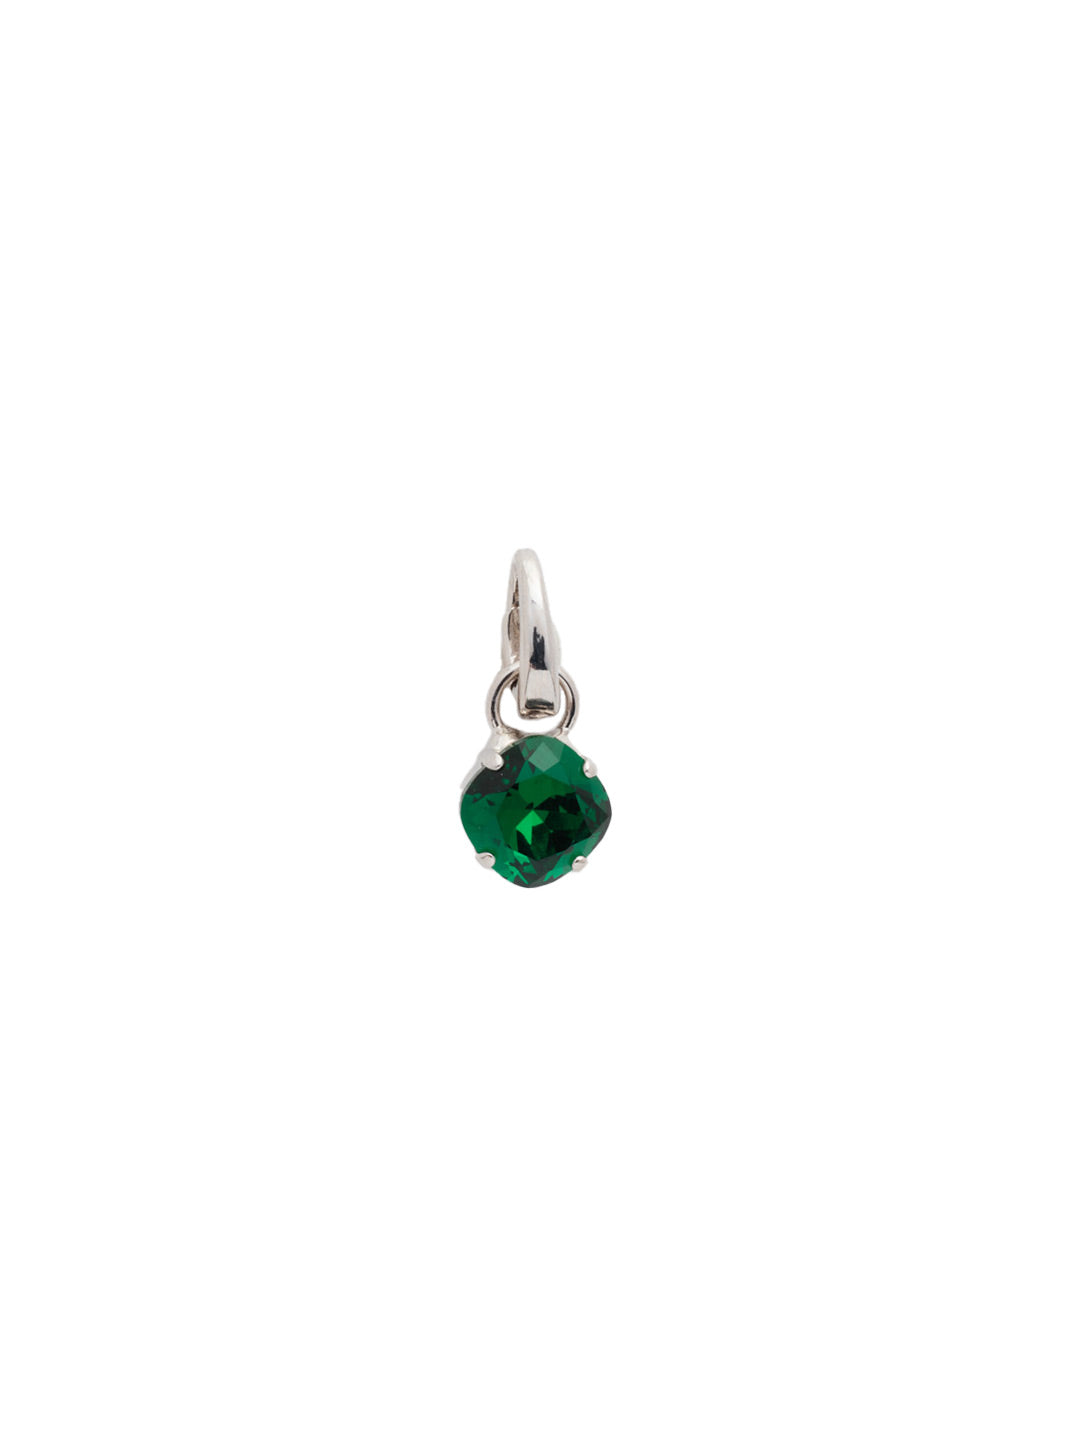 May Birthstone Emerald Charm - CEU1RHEME